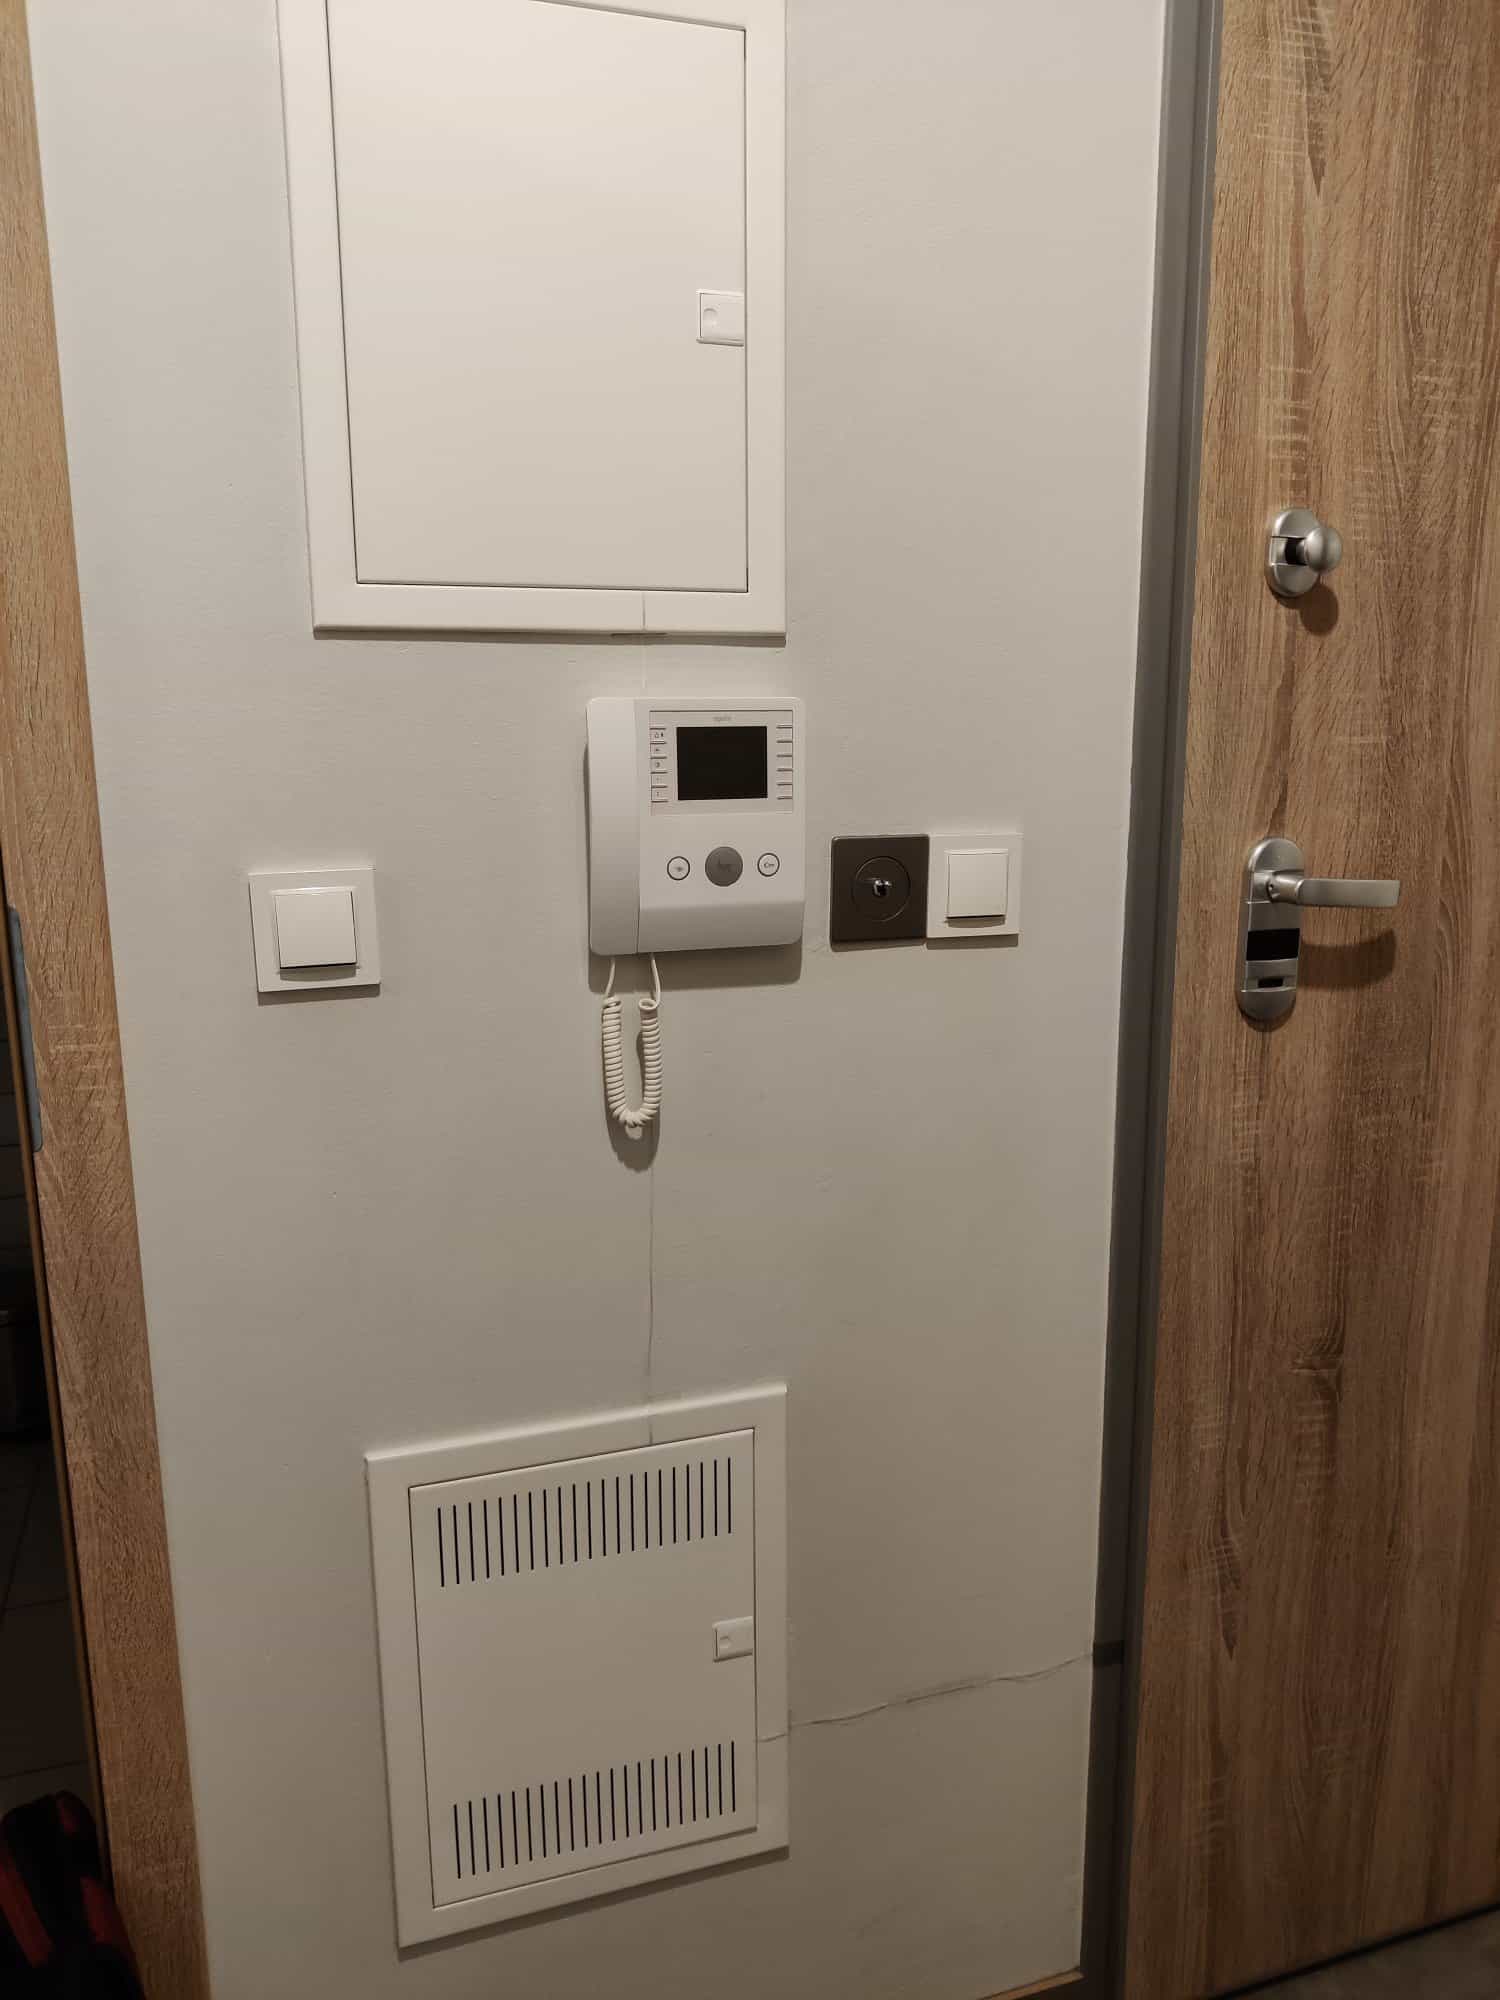 System monitorujący otwarcie drzwi do mieszkania